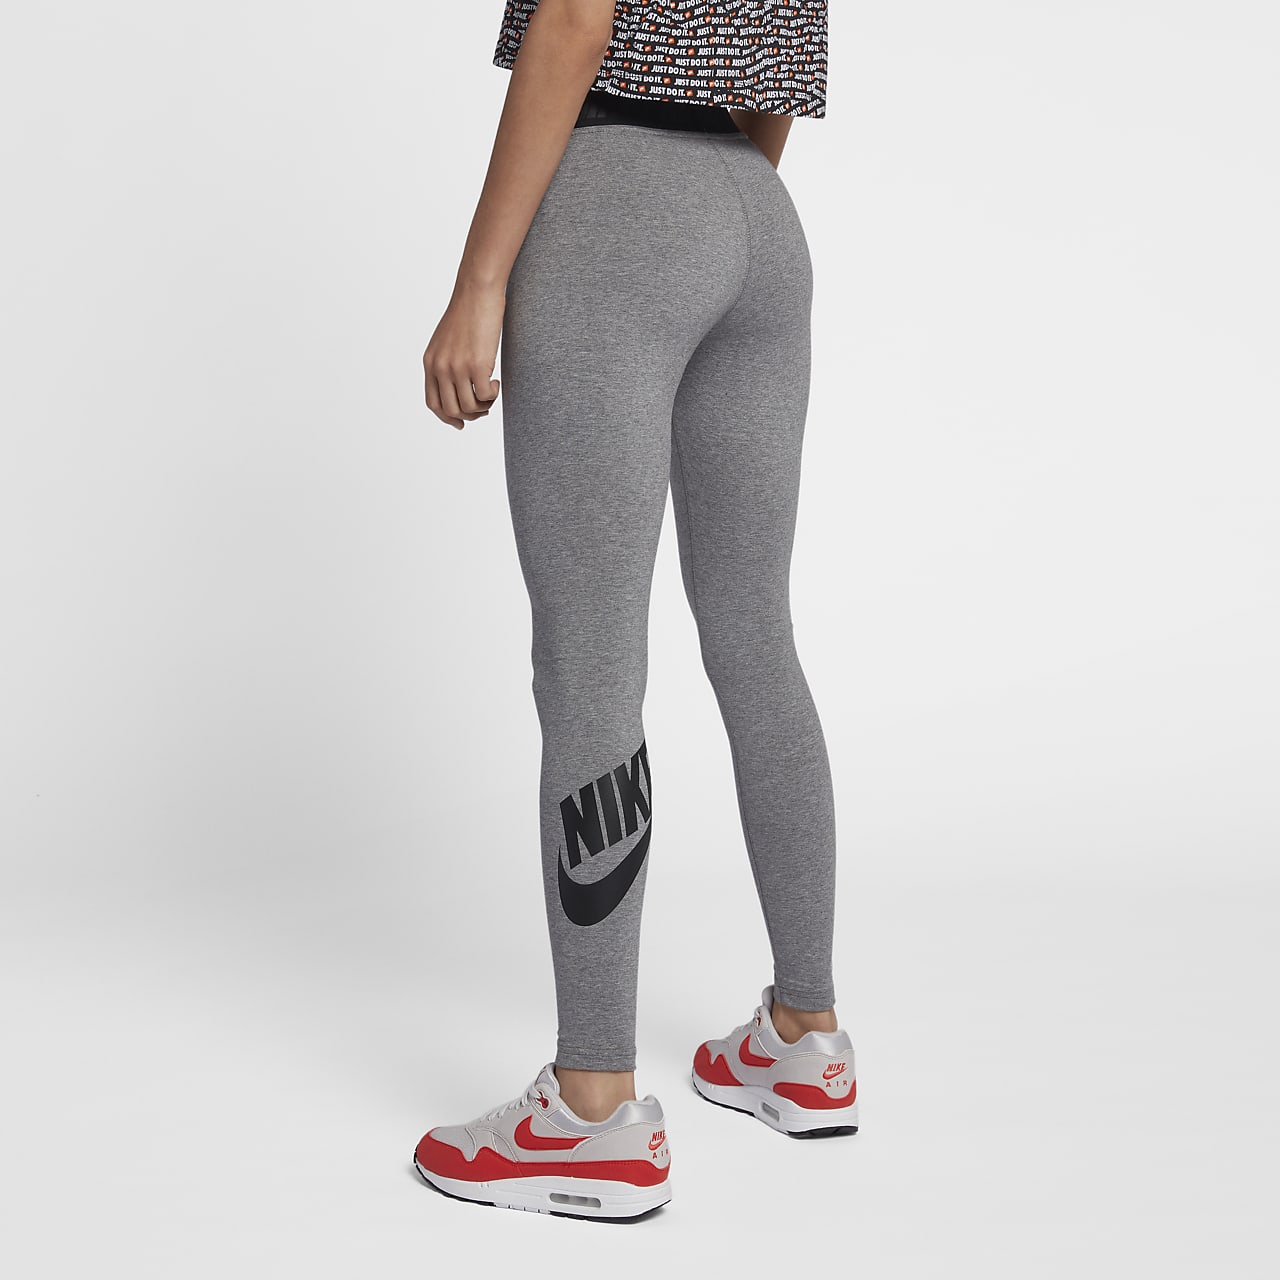 Leggings a vita alta Nike Sportswear Leg-A-See - Donna